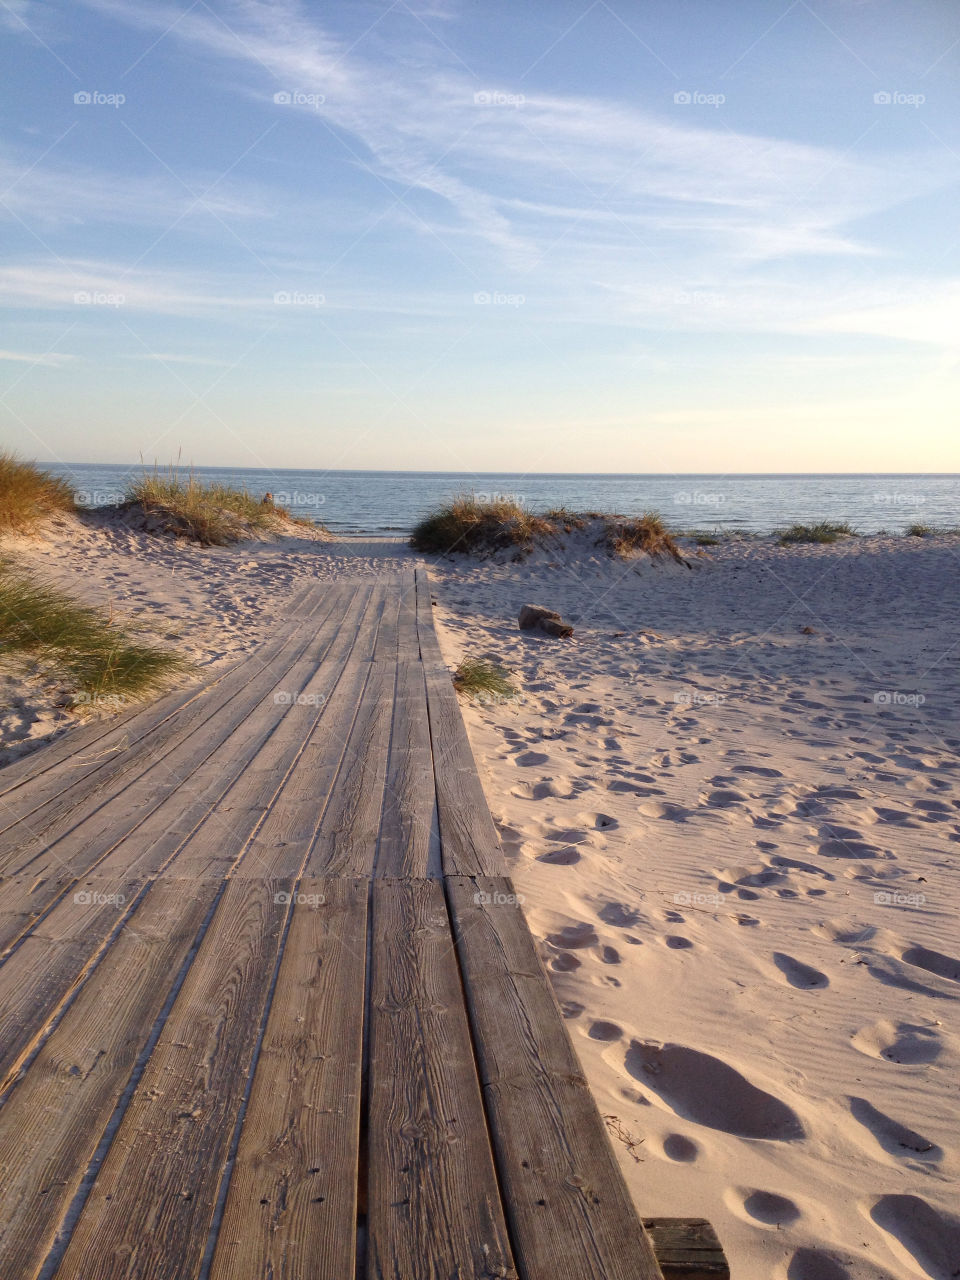 beach sweden höllviken by shec